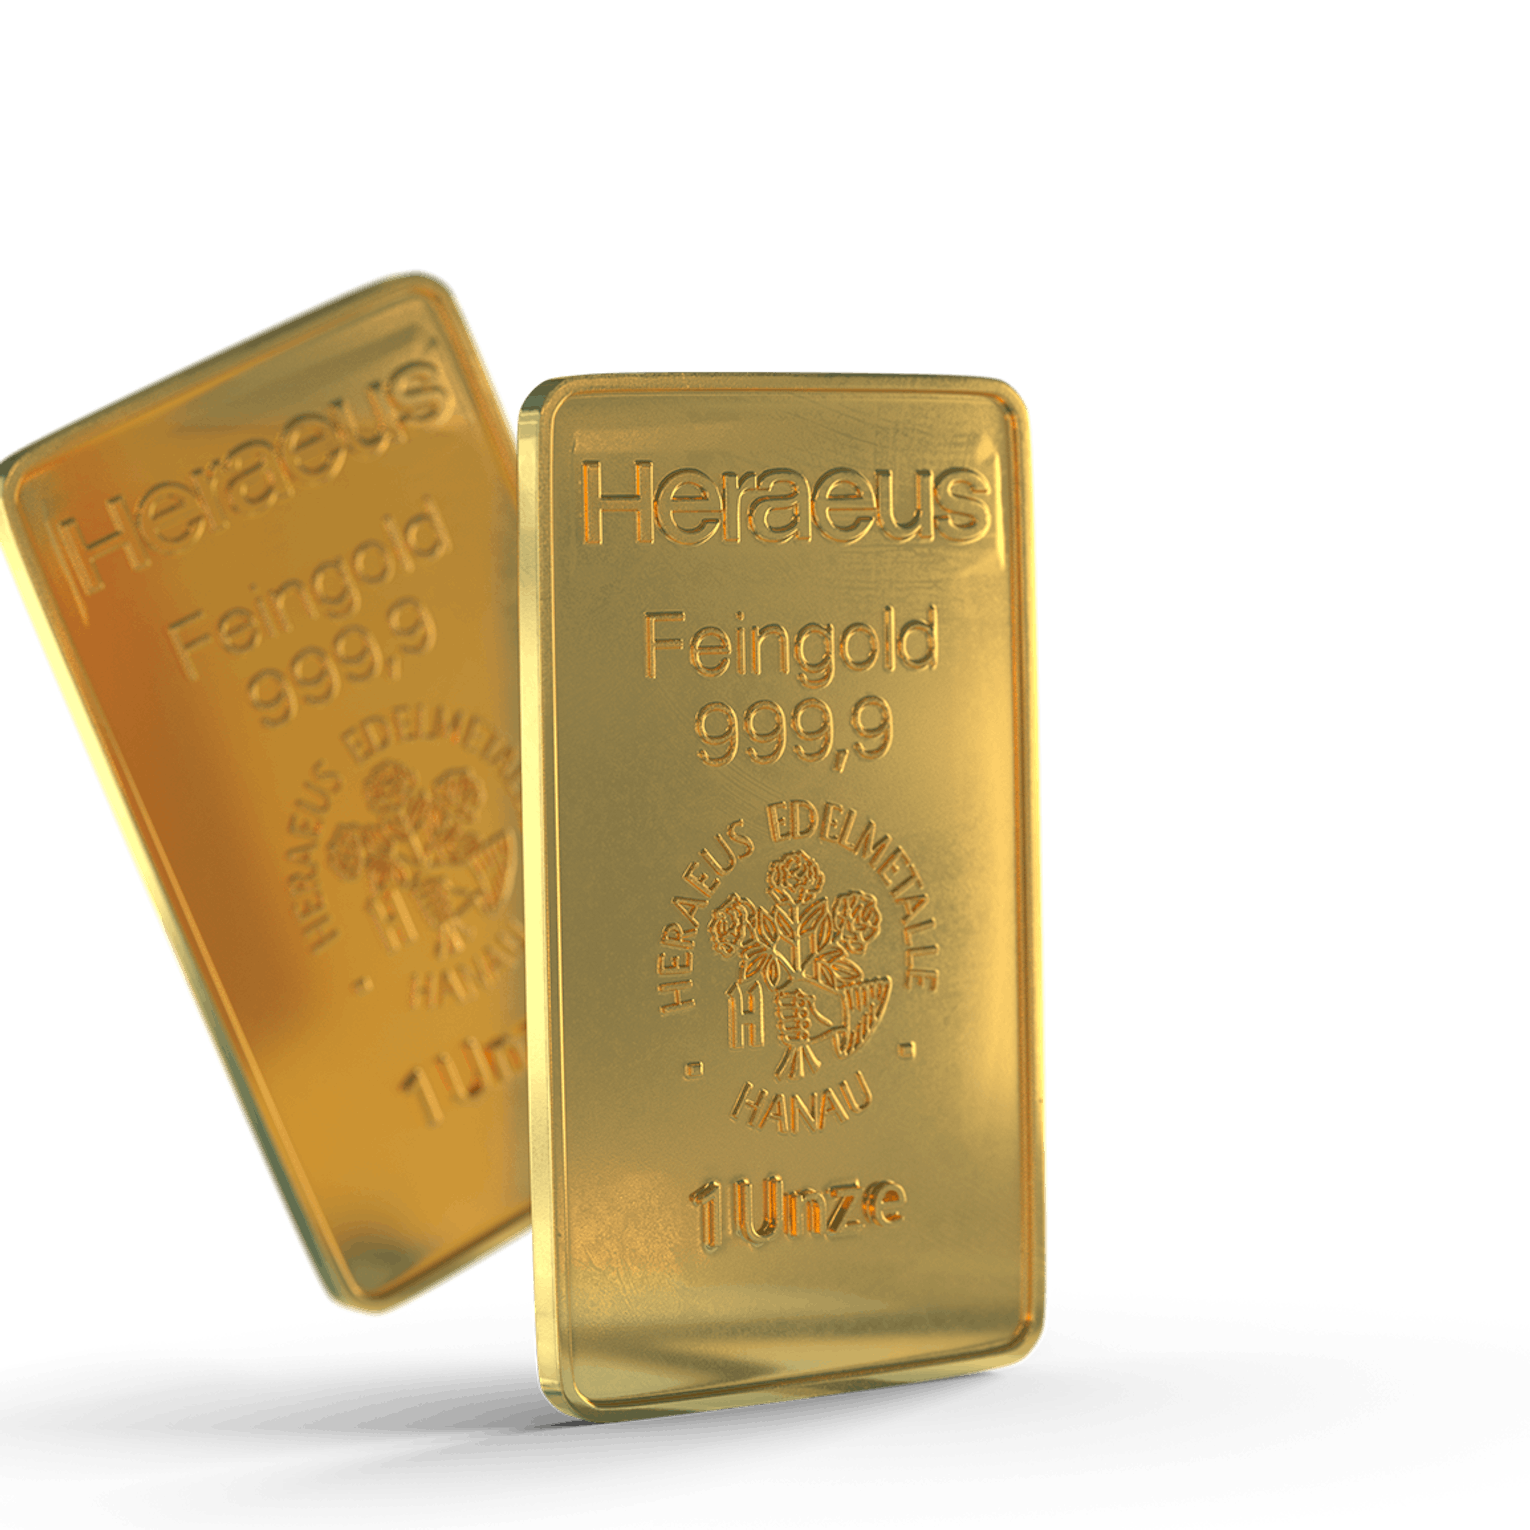 Sicher Gold via Sparplan kaufen bei Golden Gates.